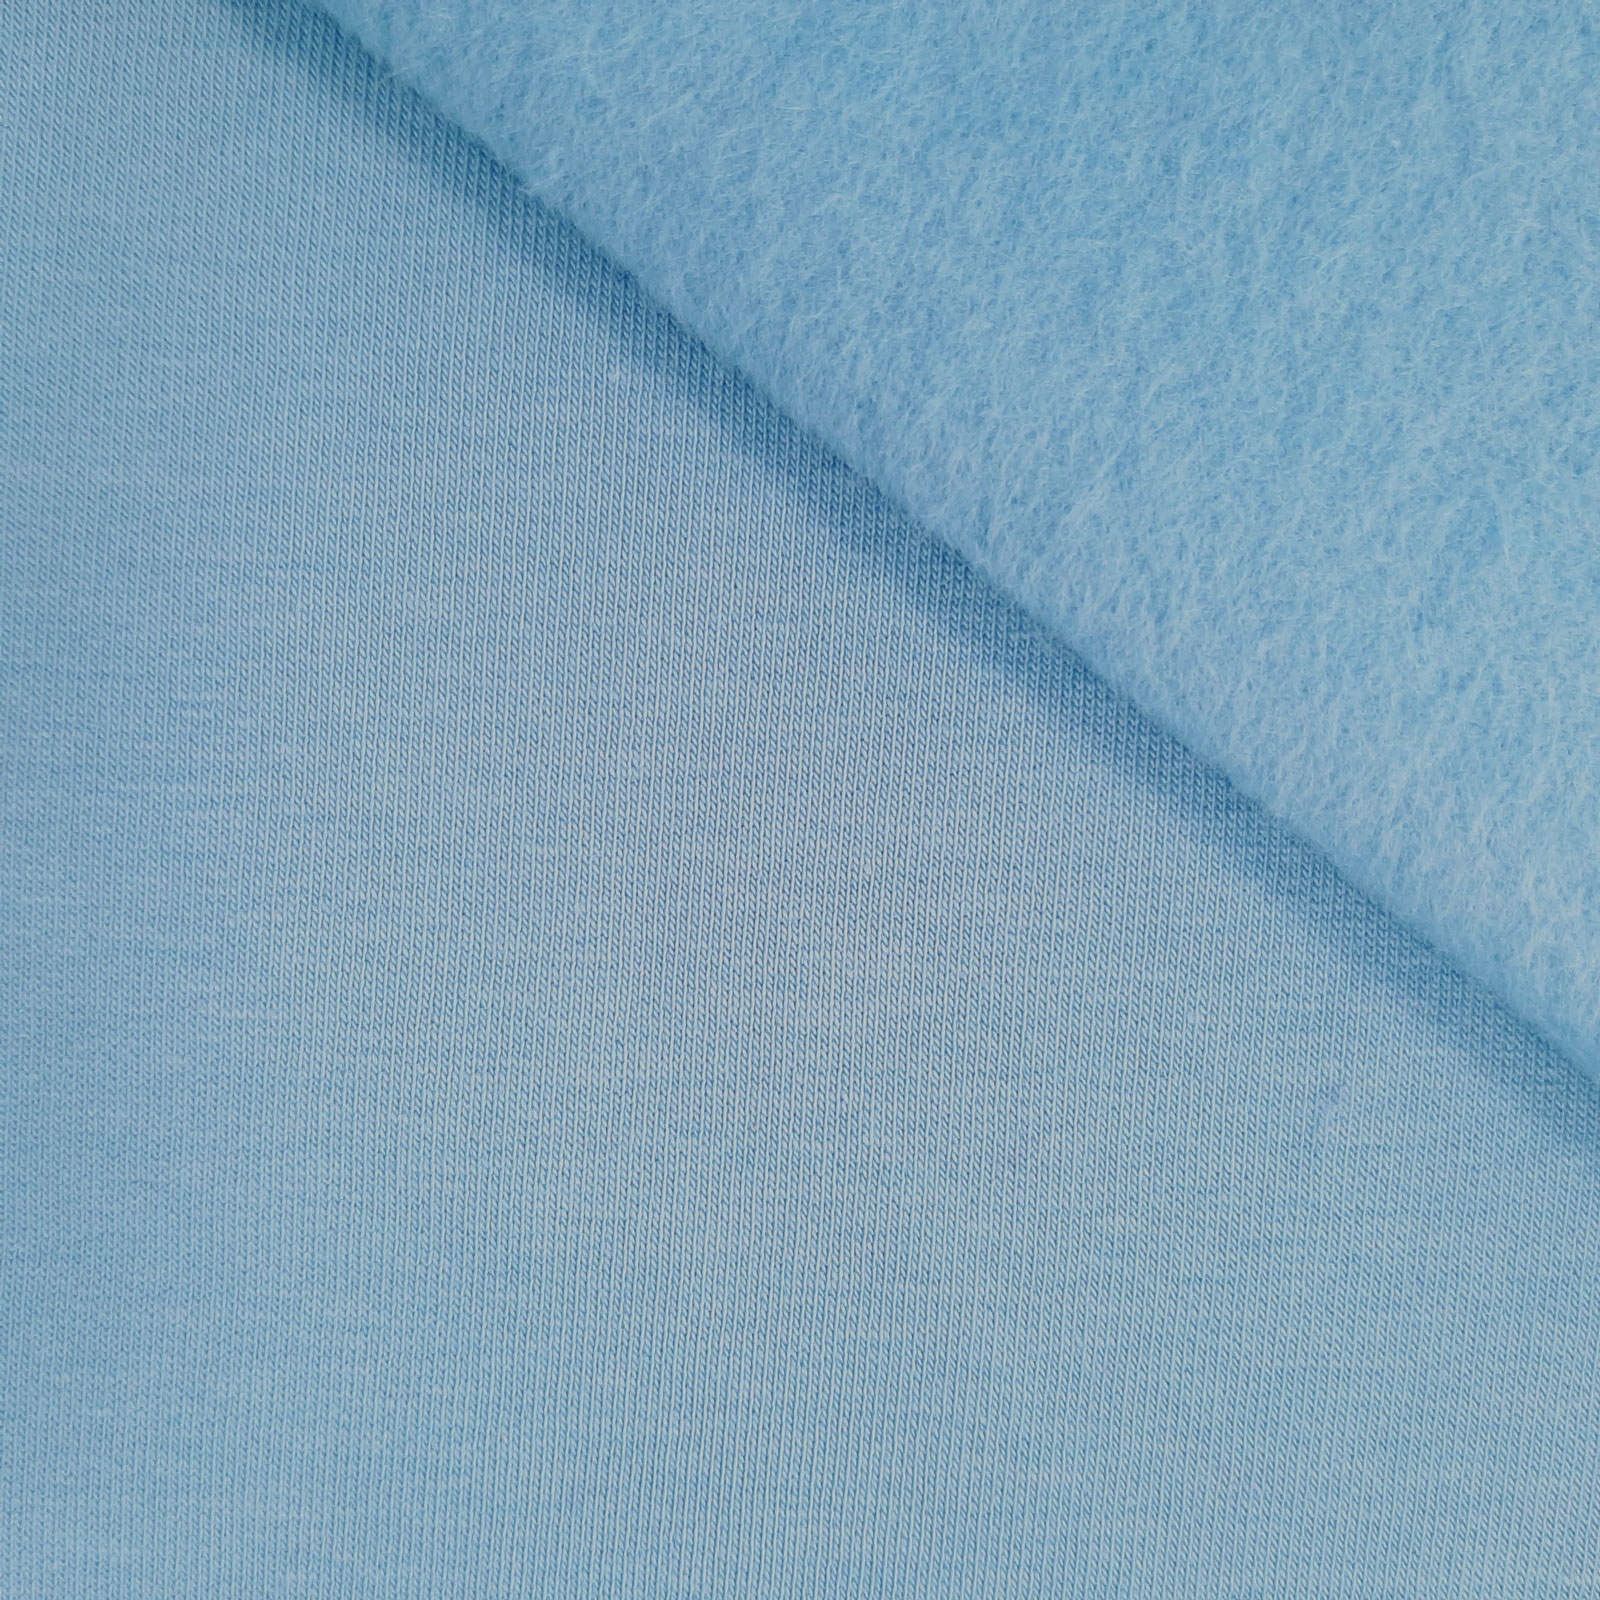 Tessuto felpa di cotone - Sweden blue